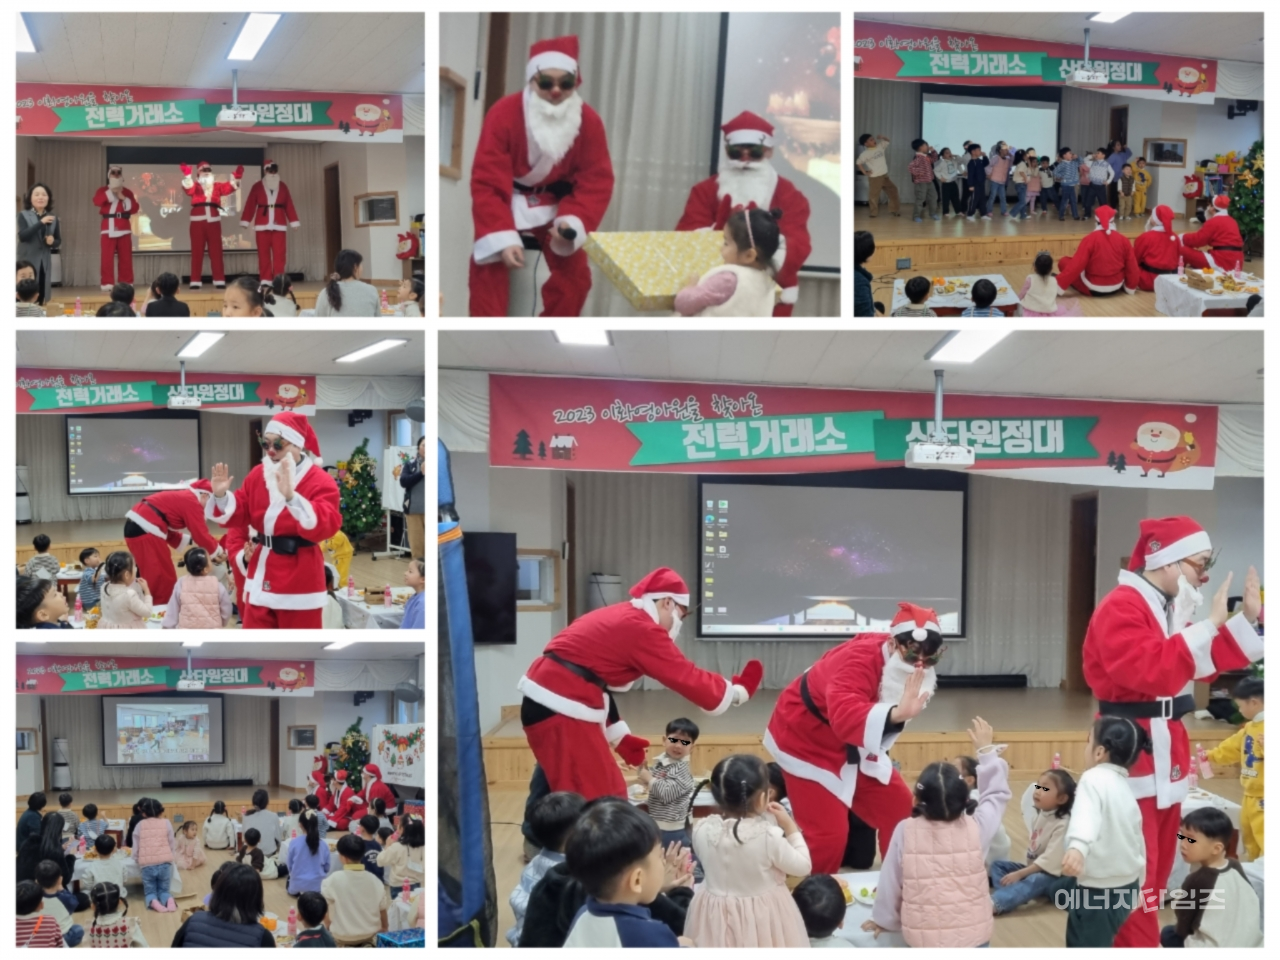 전력거래소가 자매결연복지시설인 이화영아원을 방문해 어린이들을 위한 다양한 크리스마스 행사를 개최했다.